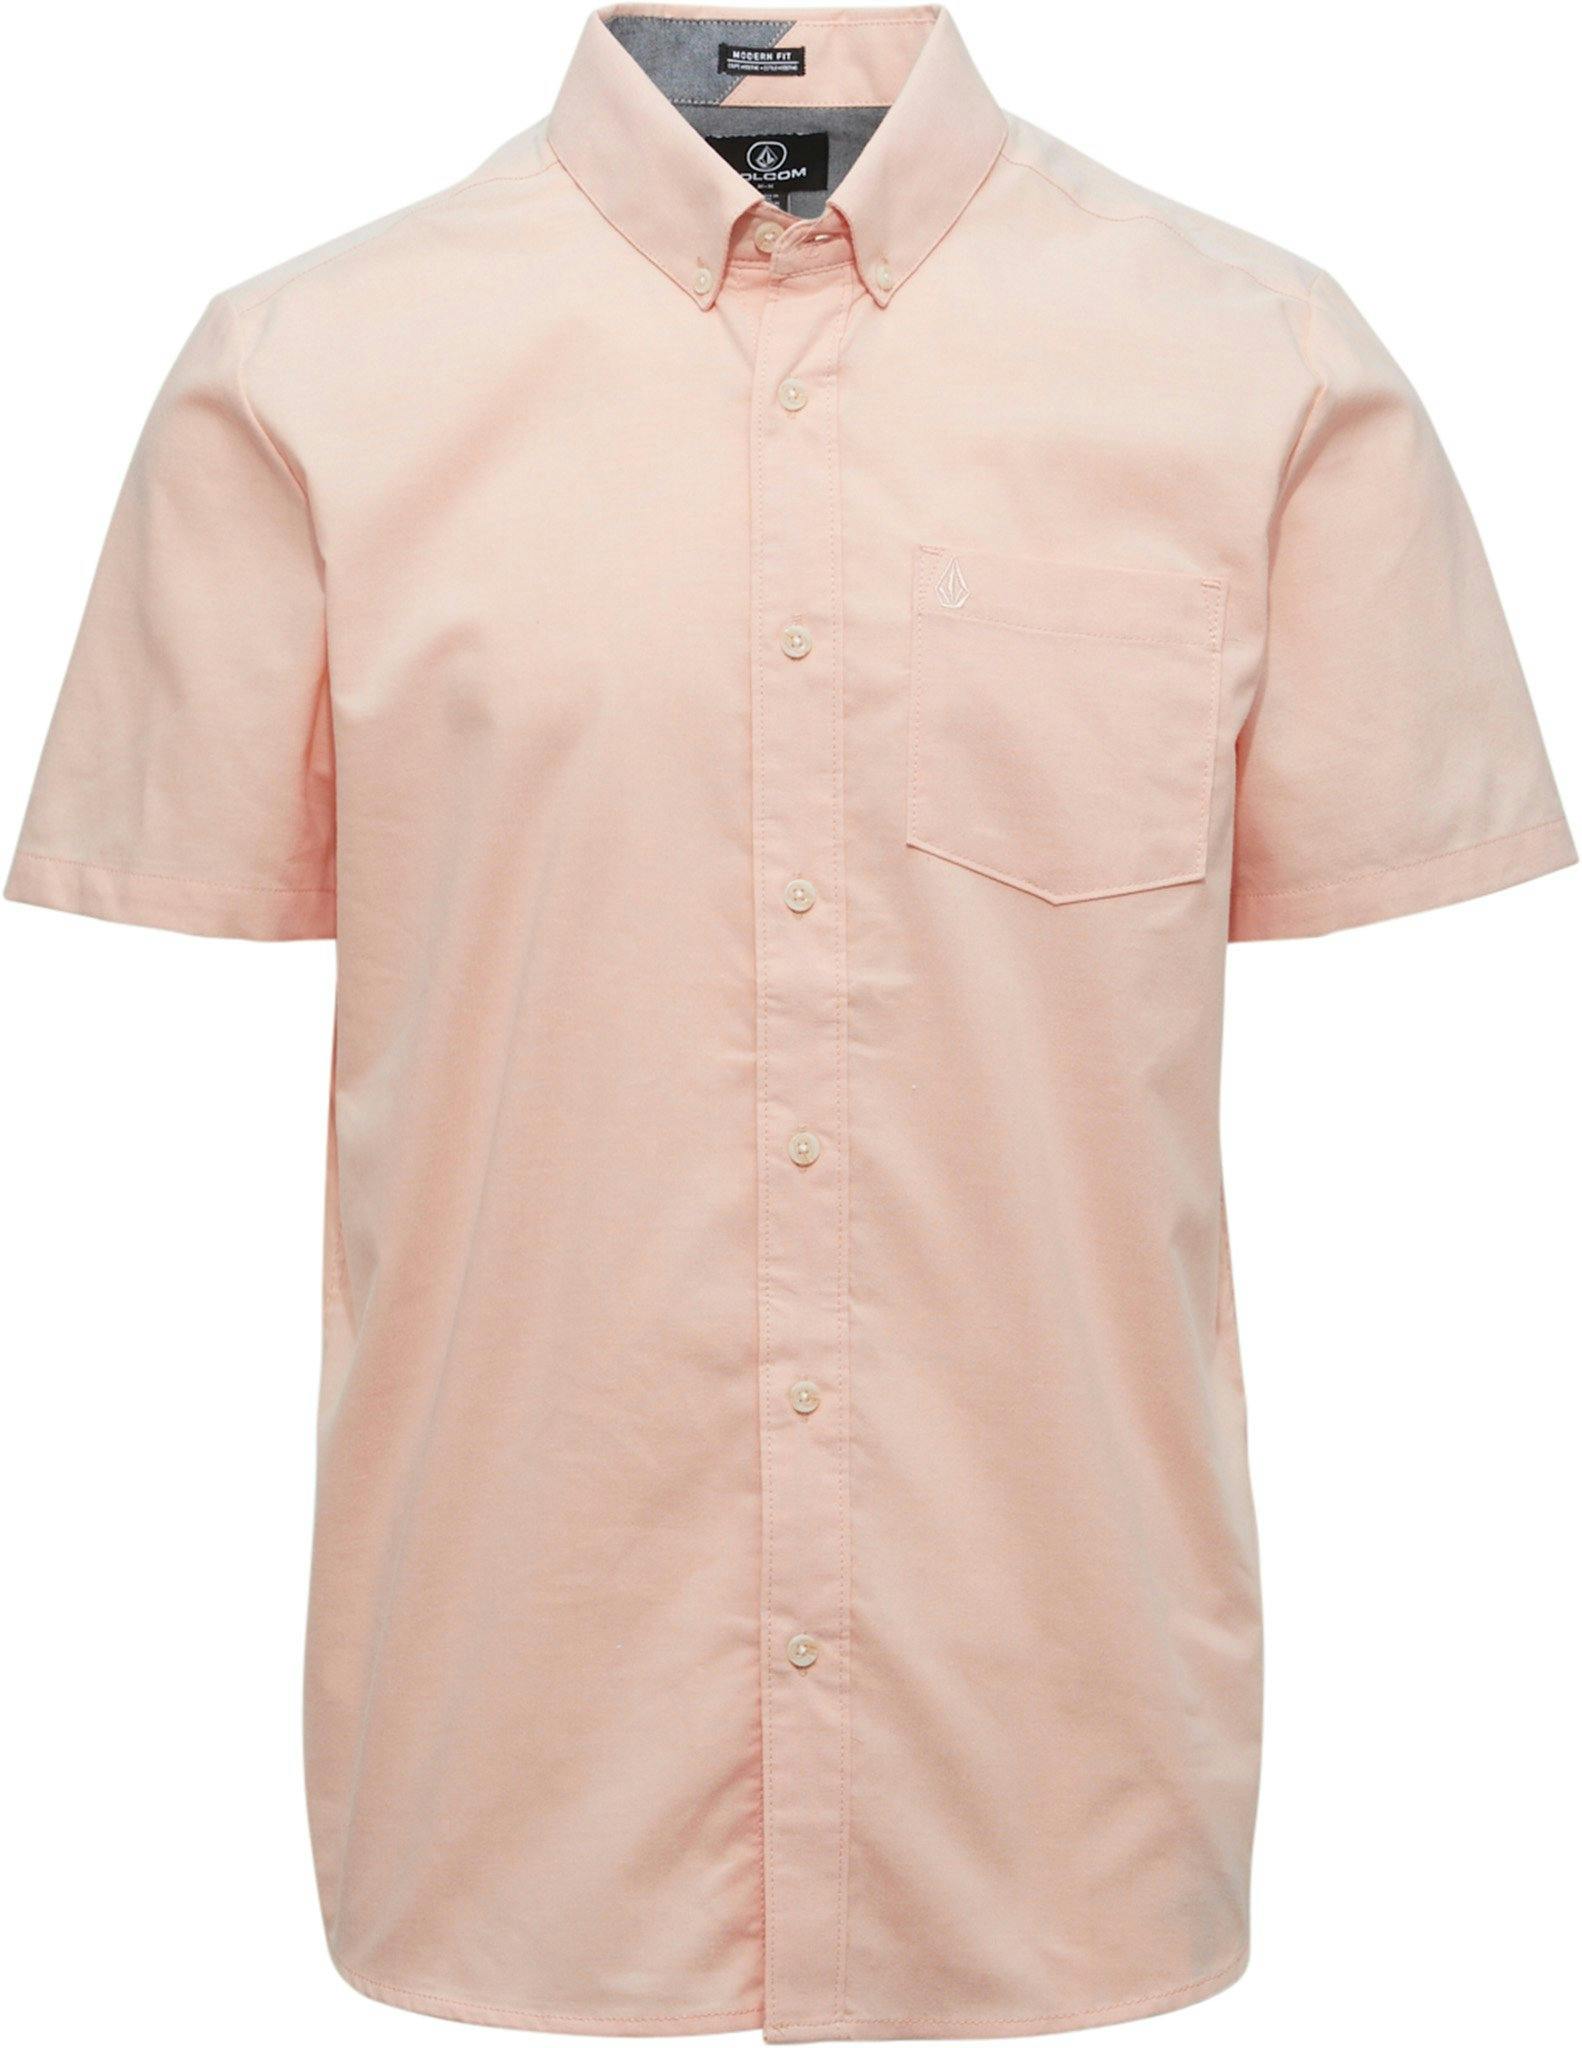 Product image for Everett Oxford Short Sleeve Shirt - Men's